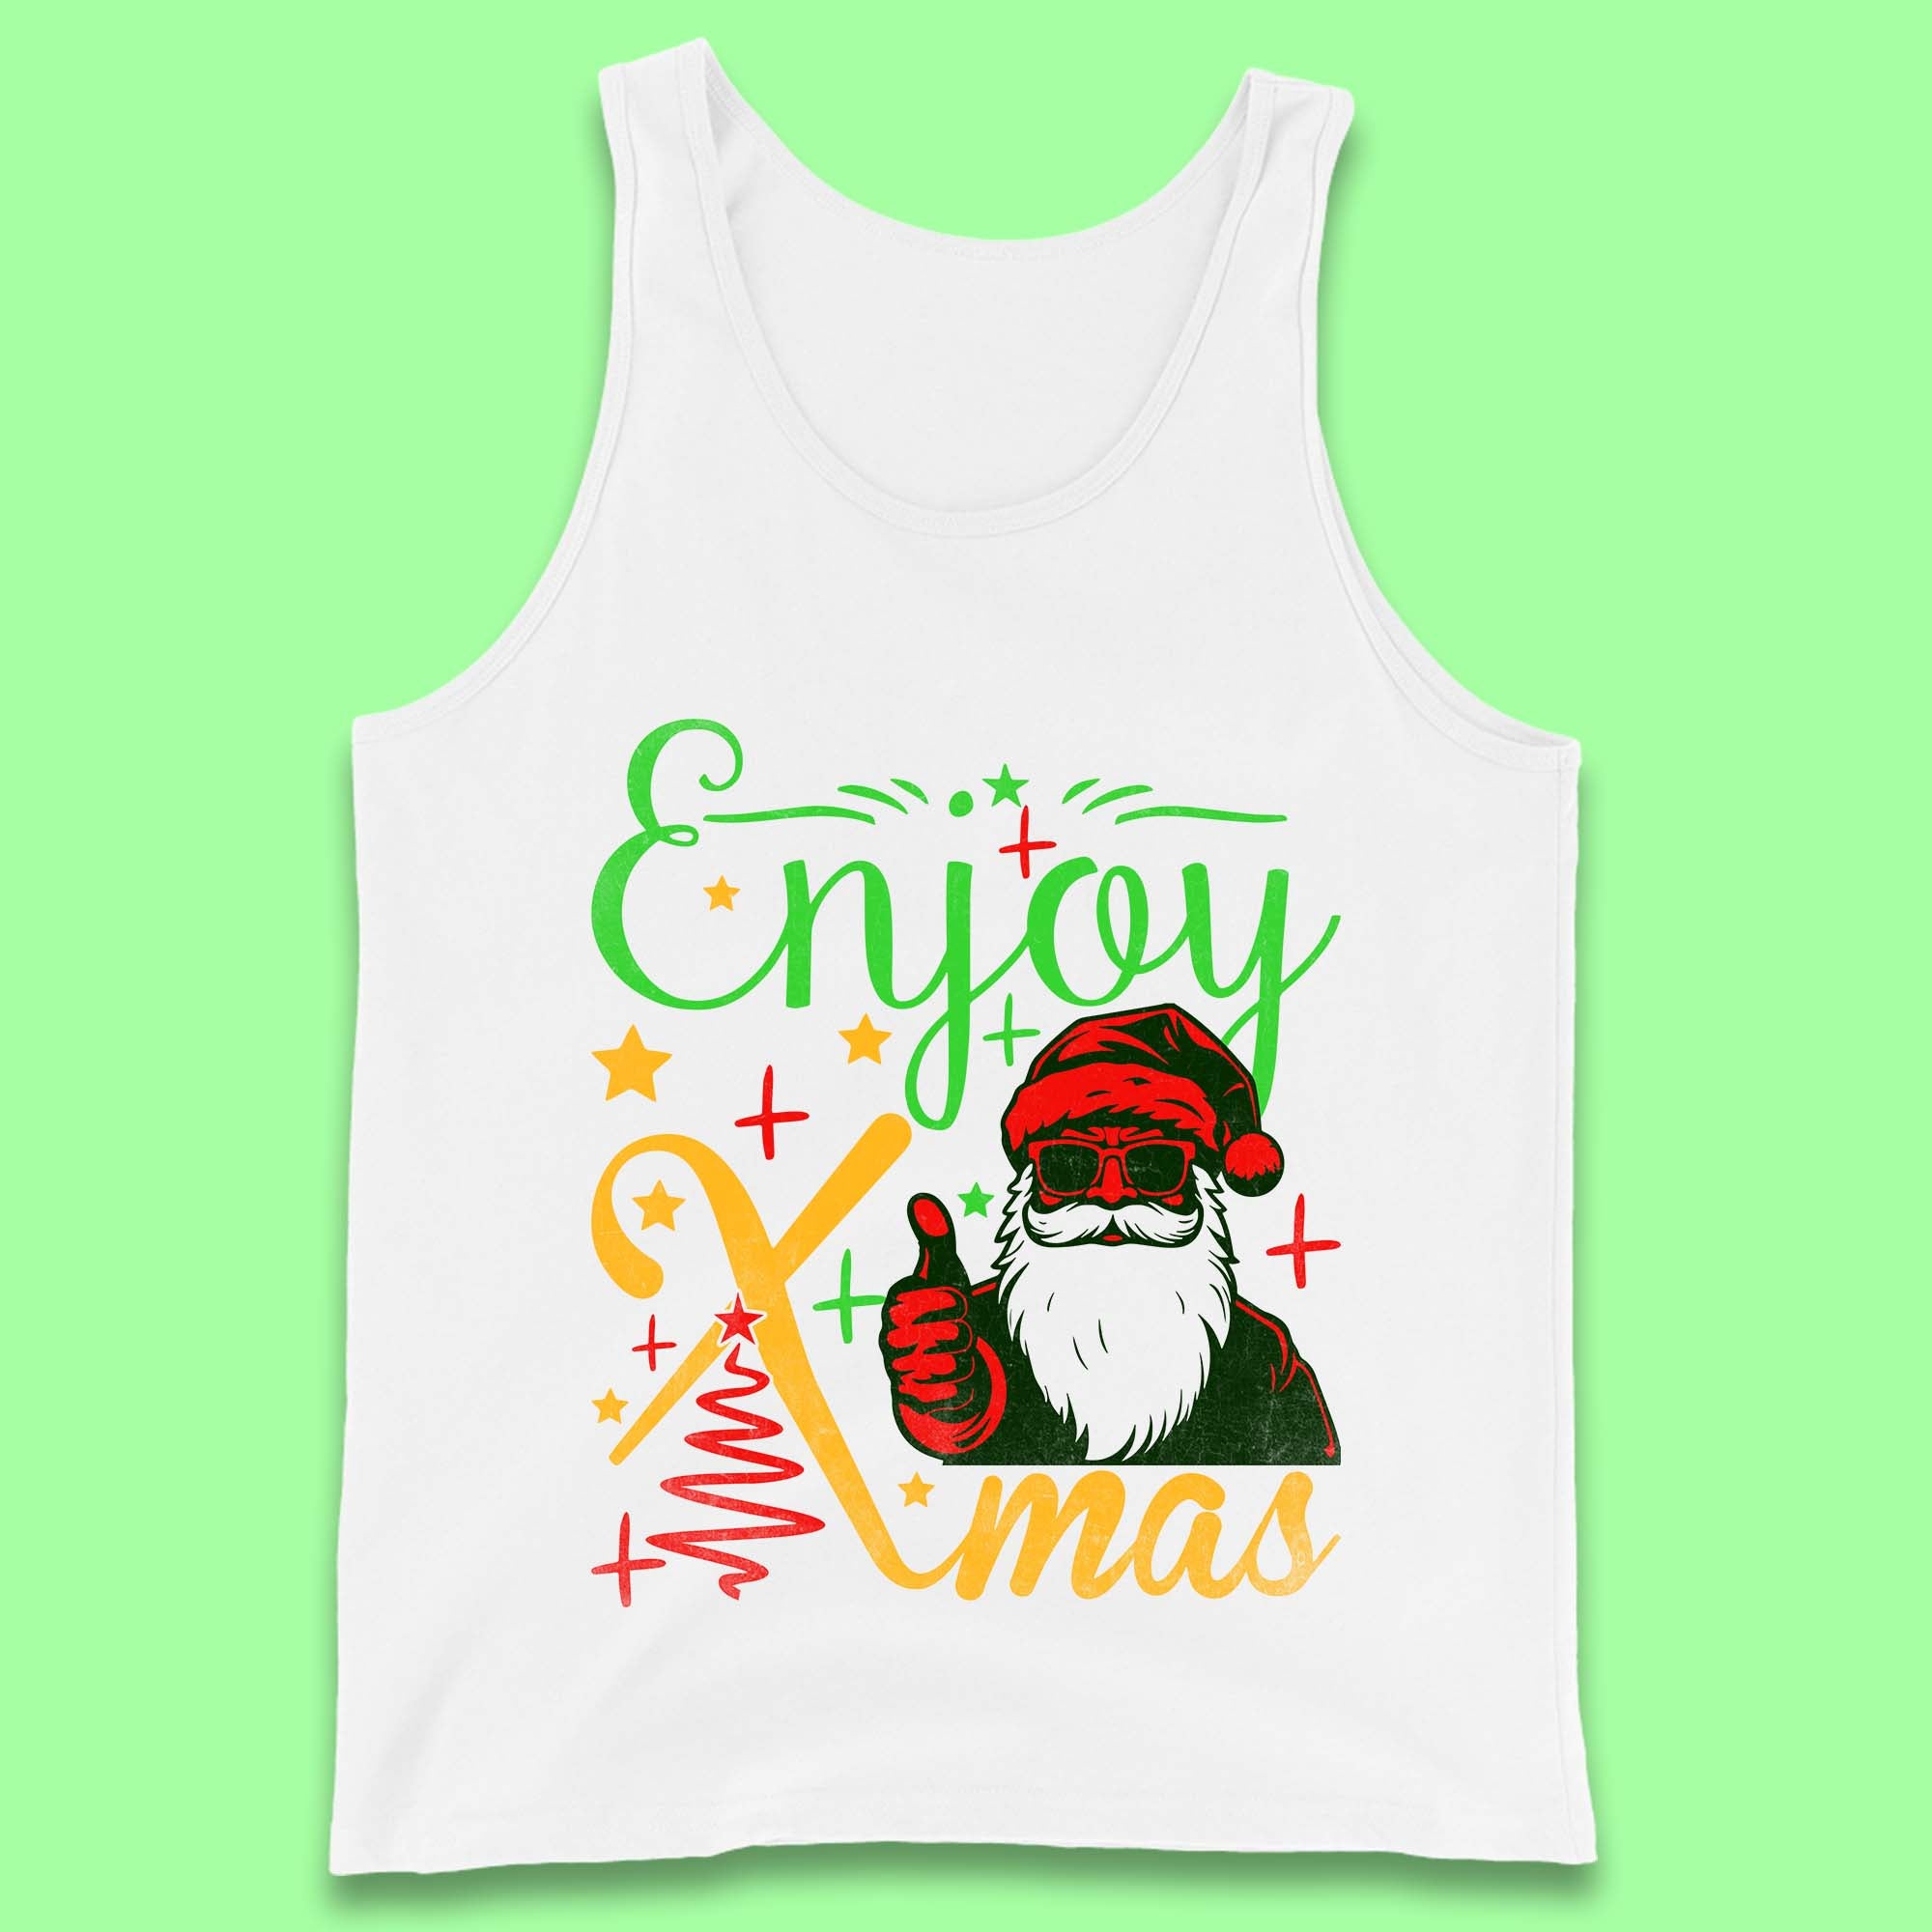 Enjoy Xmas Santa Claus Thumbs Up Merry Christmas Holiday Season Tank Top